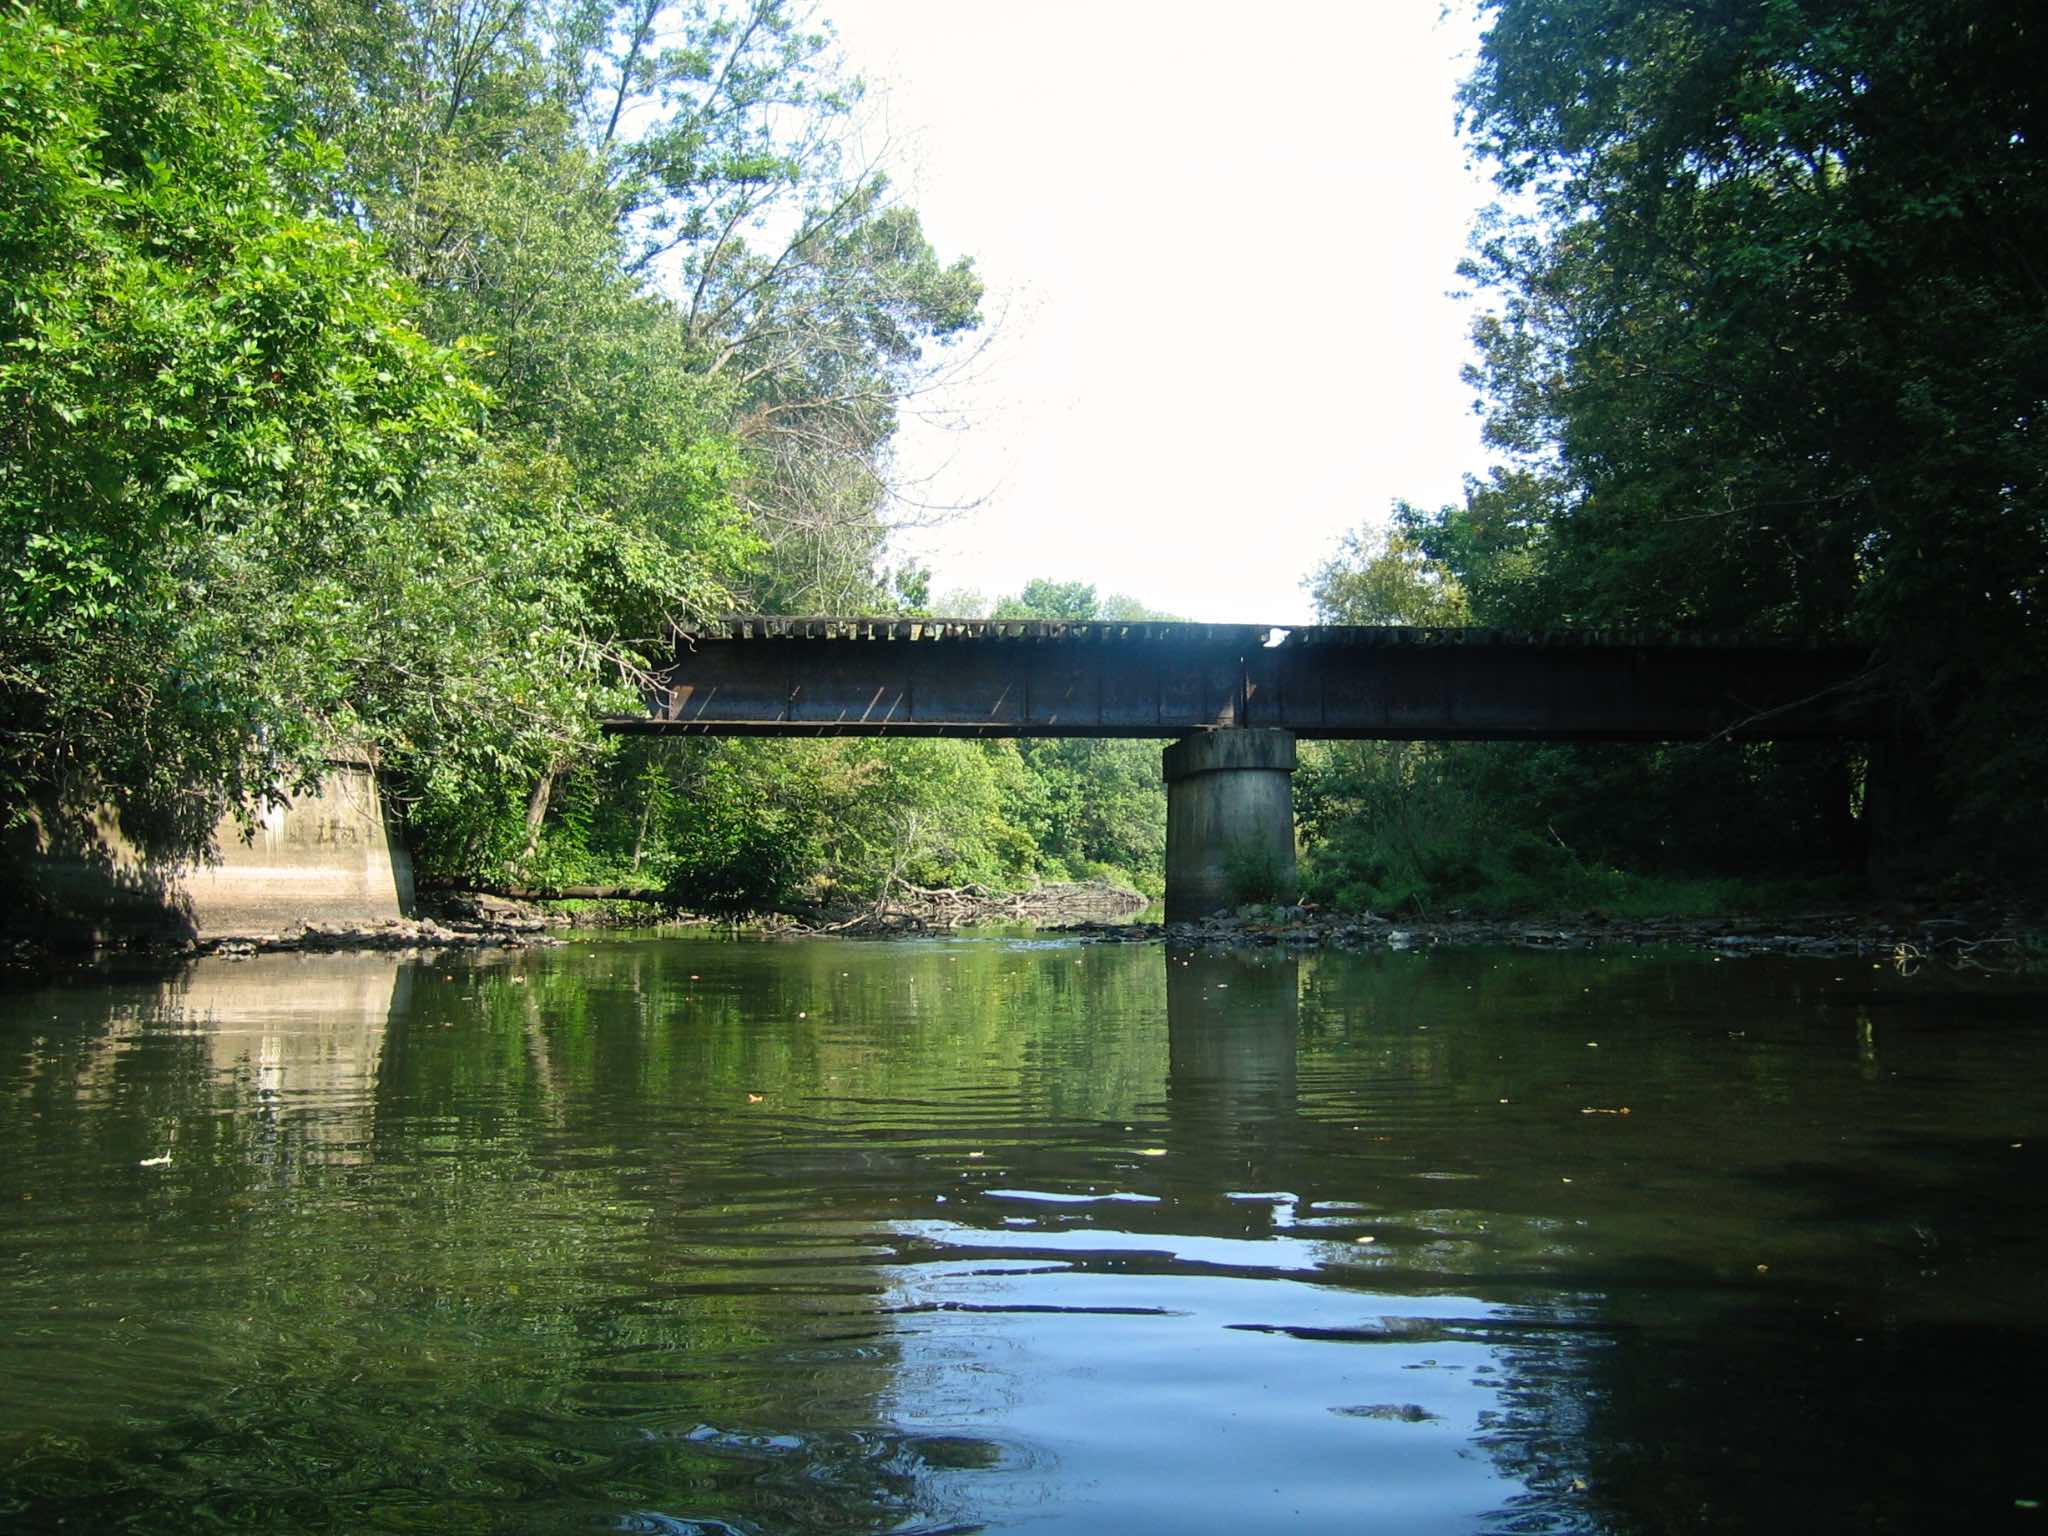 Bridge pre-conversion, in 2007